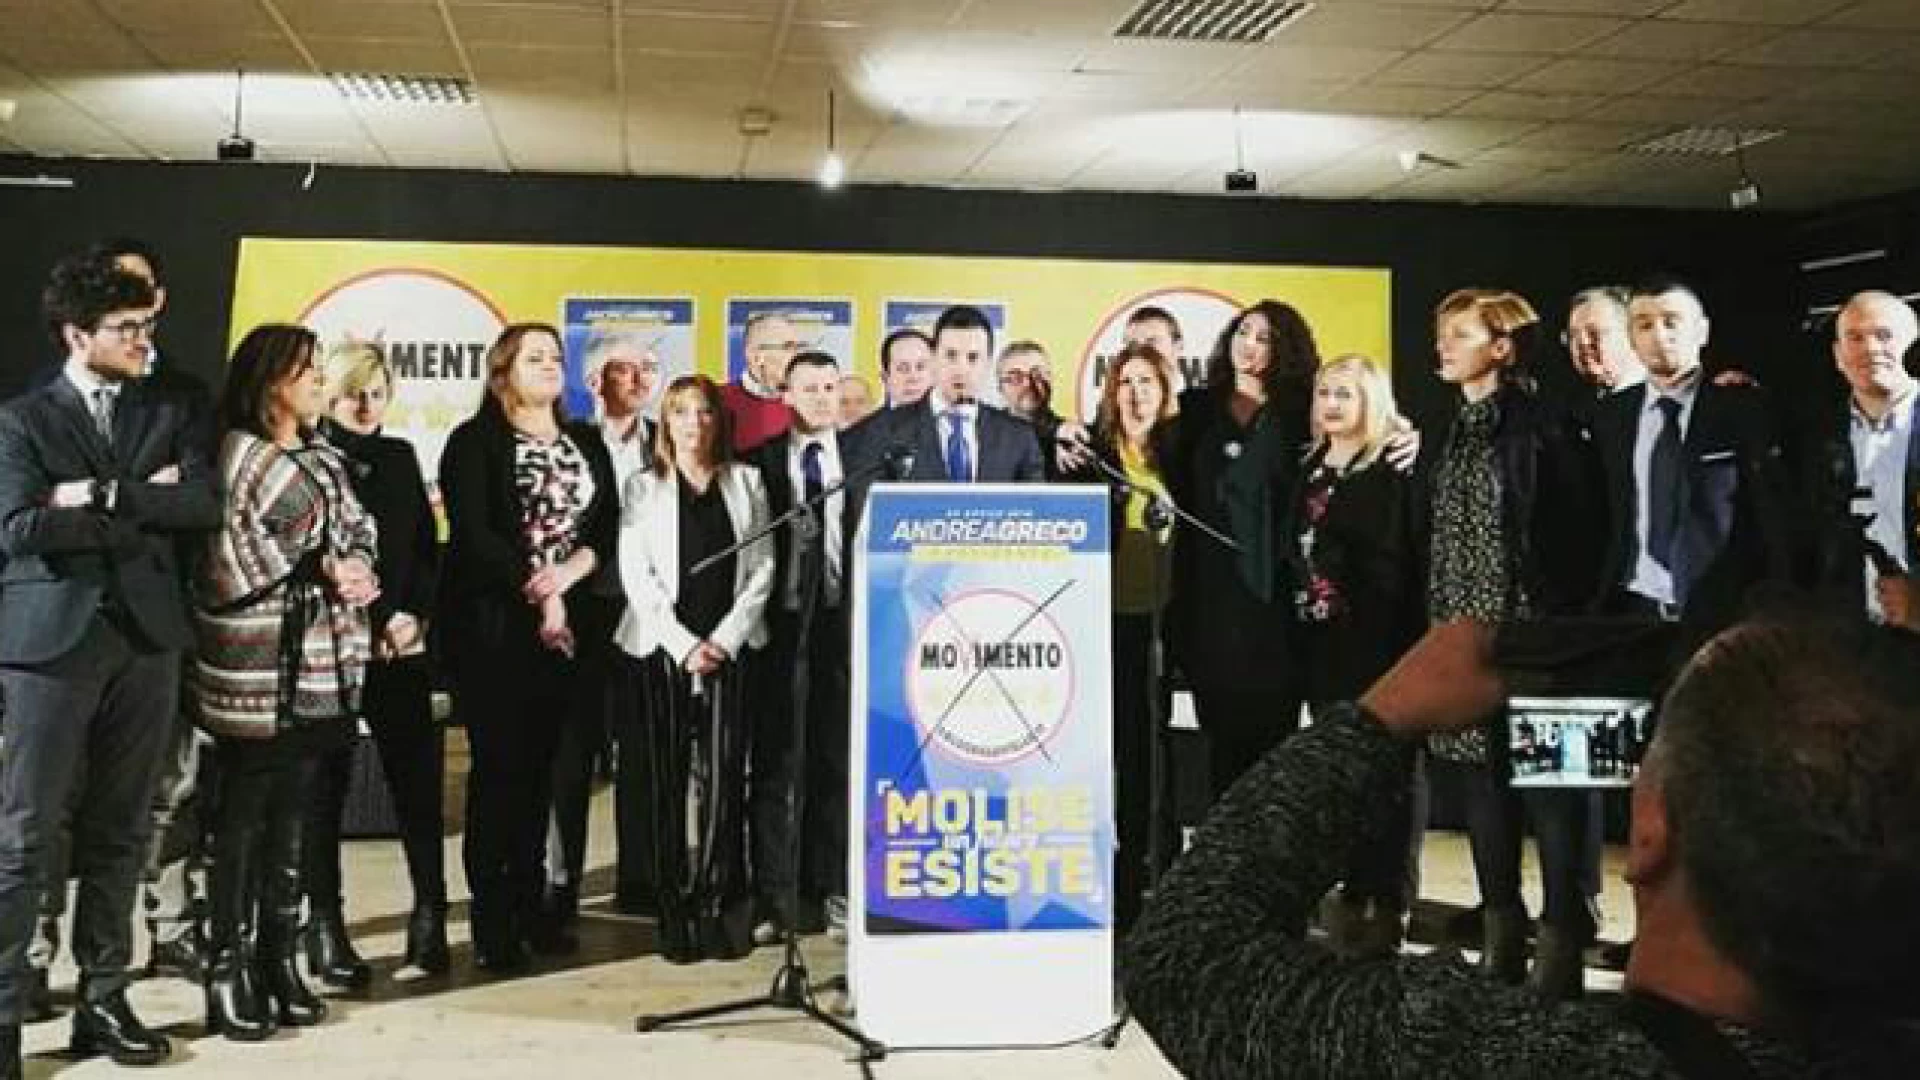 Competenze e passione: il MoVimento 5 Stelle è pronto a governare il Molise. Presentati i candidati pentastellati.